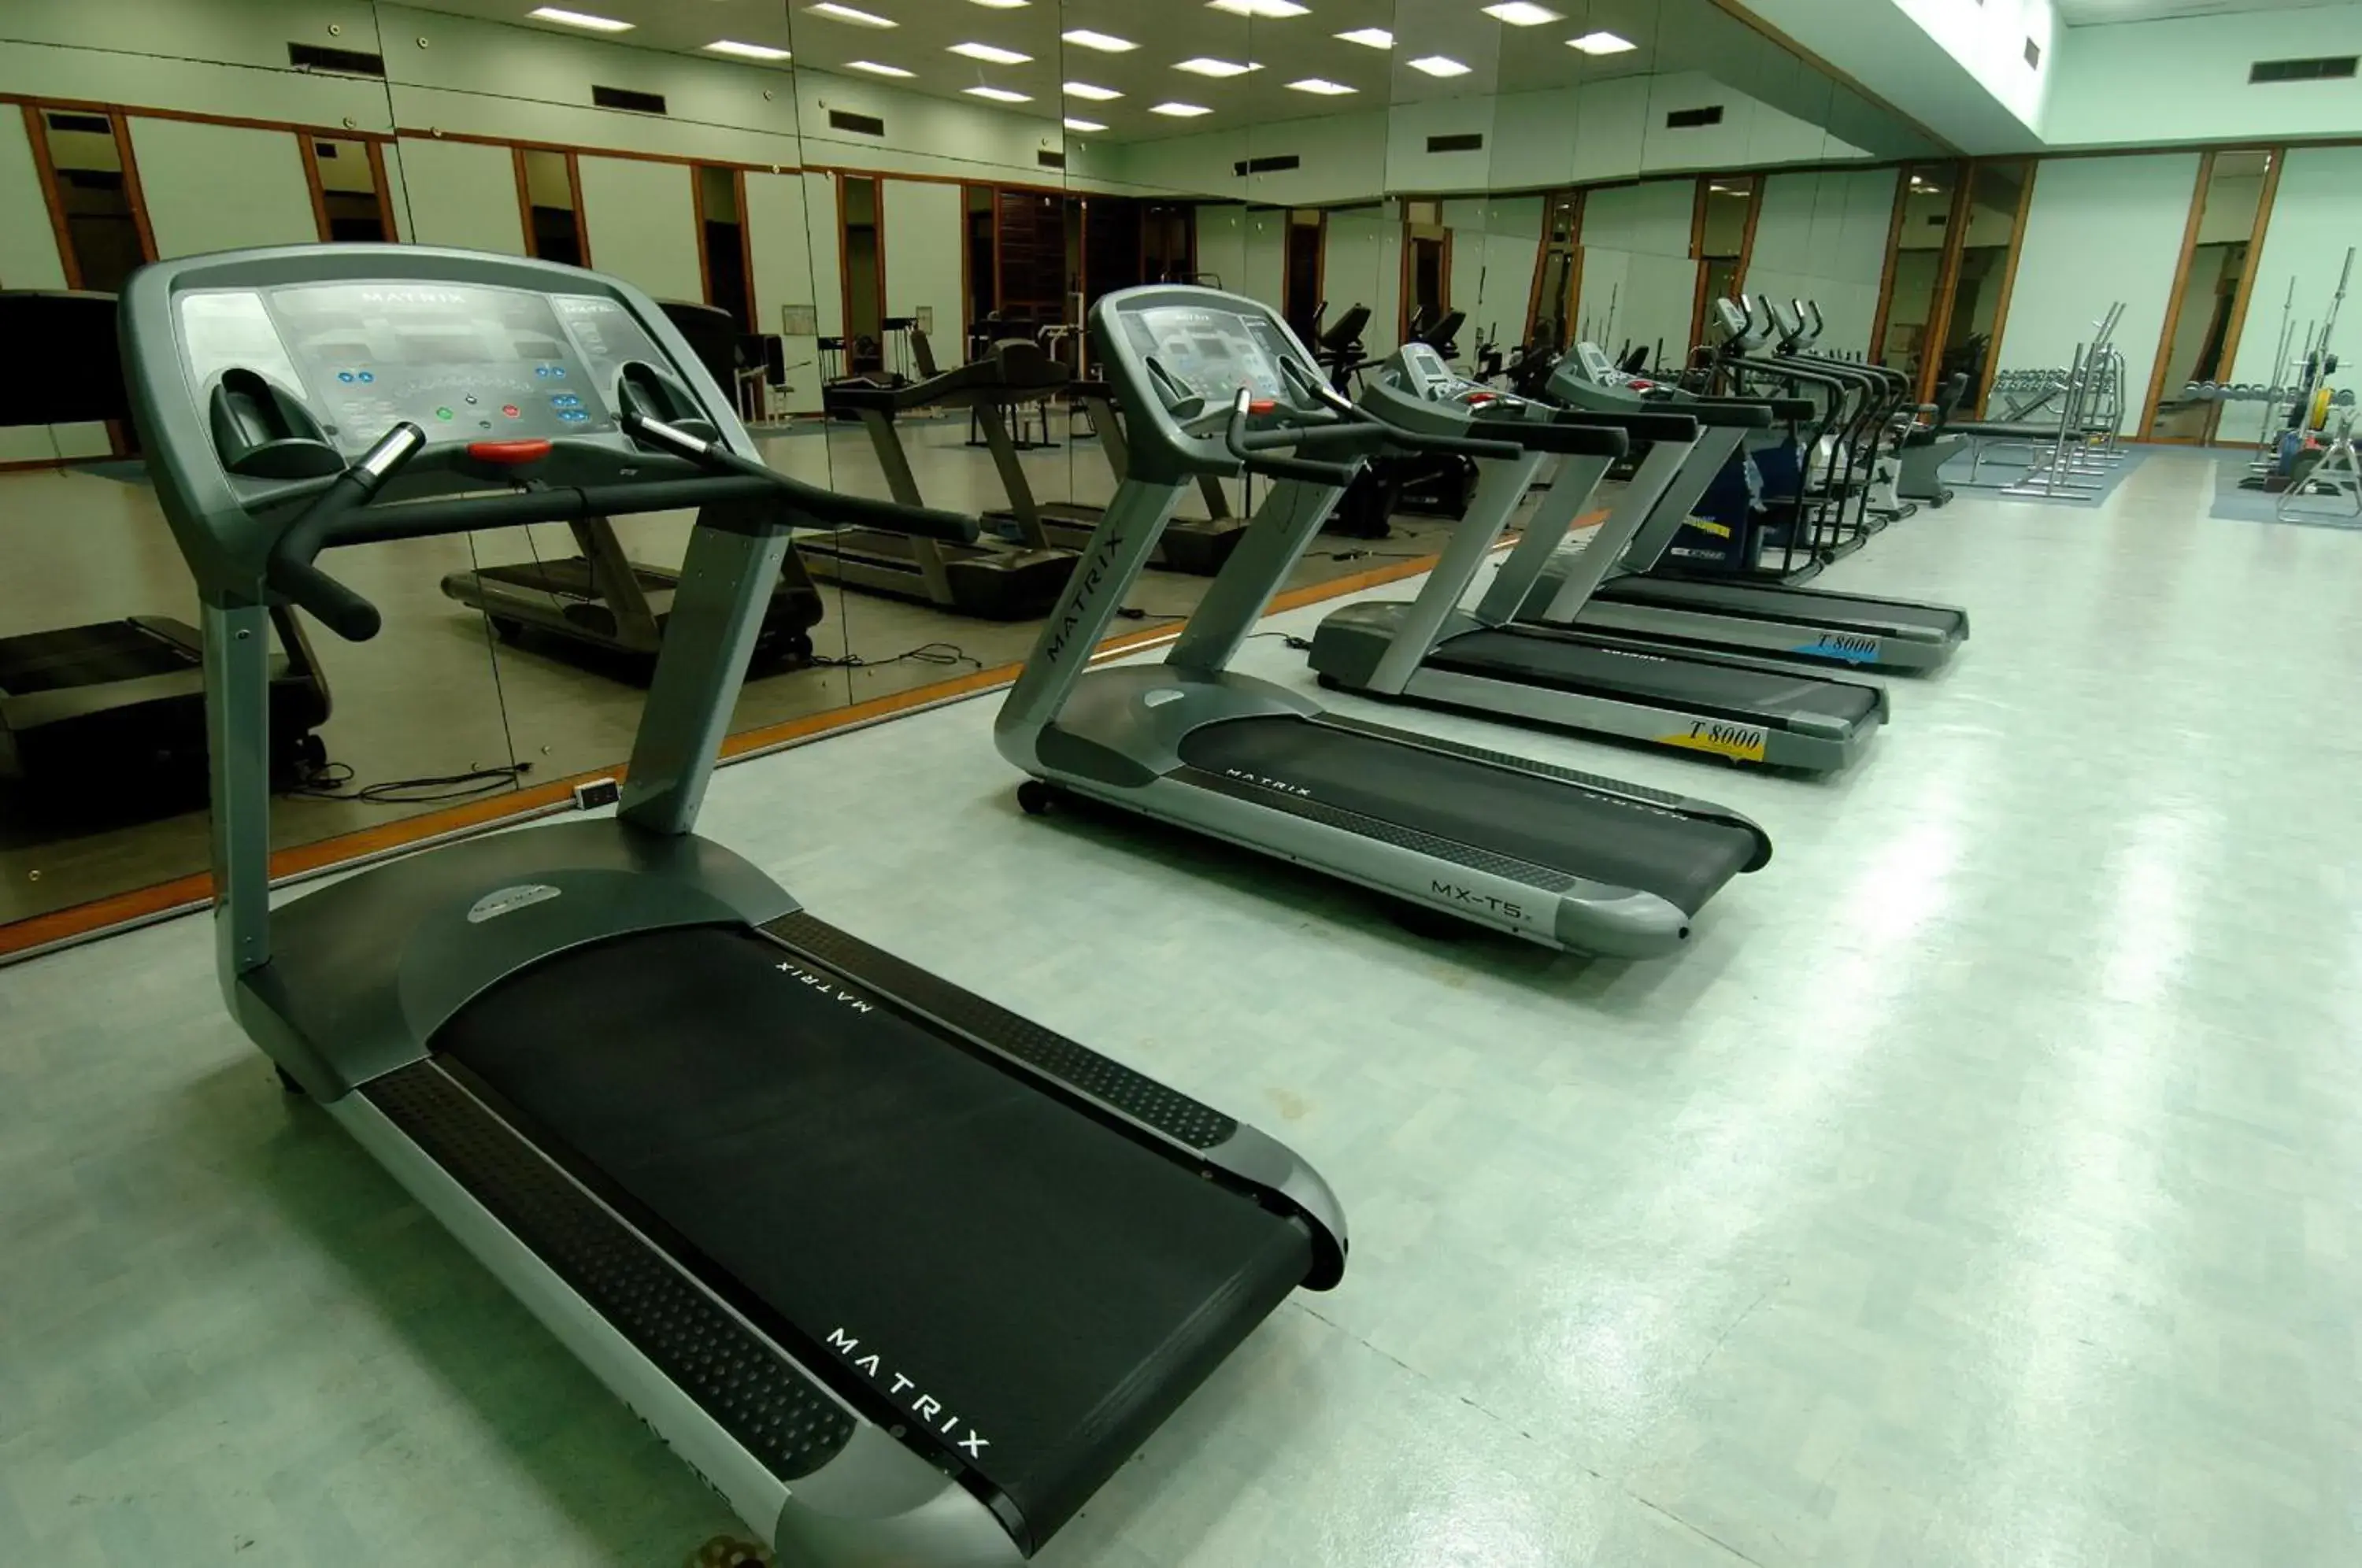 Fitness centre/facilities, Fitness Center/Facilities in Ambassador City Jomtien Pattaya - Inn Wing